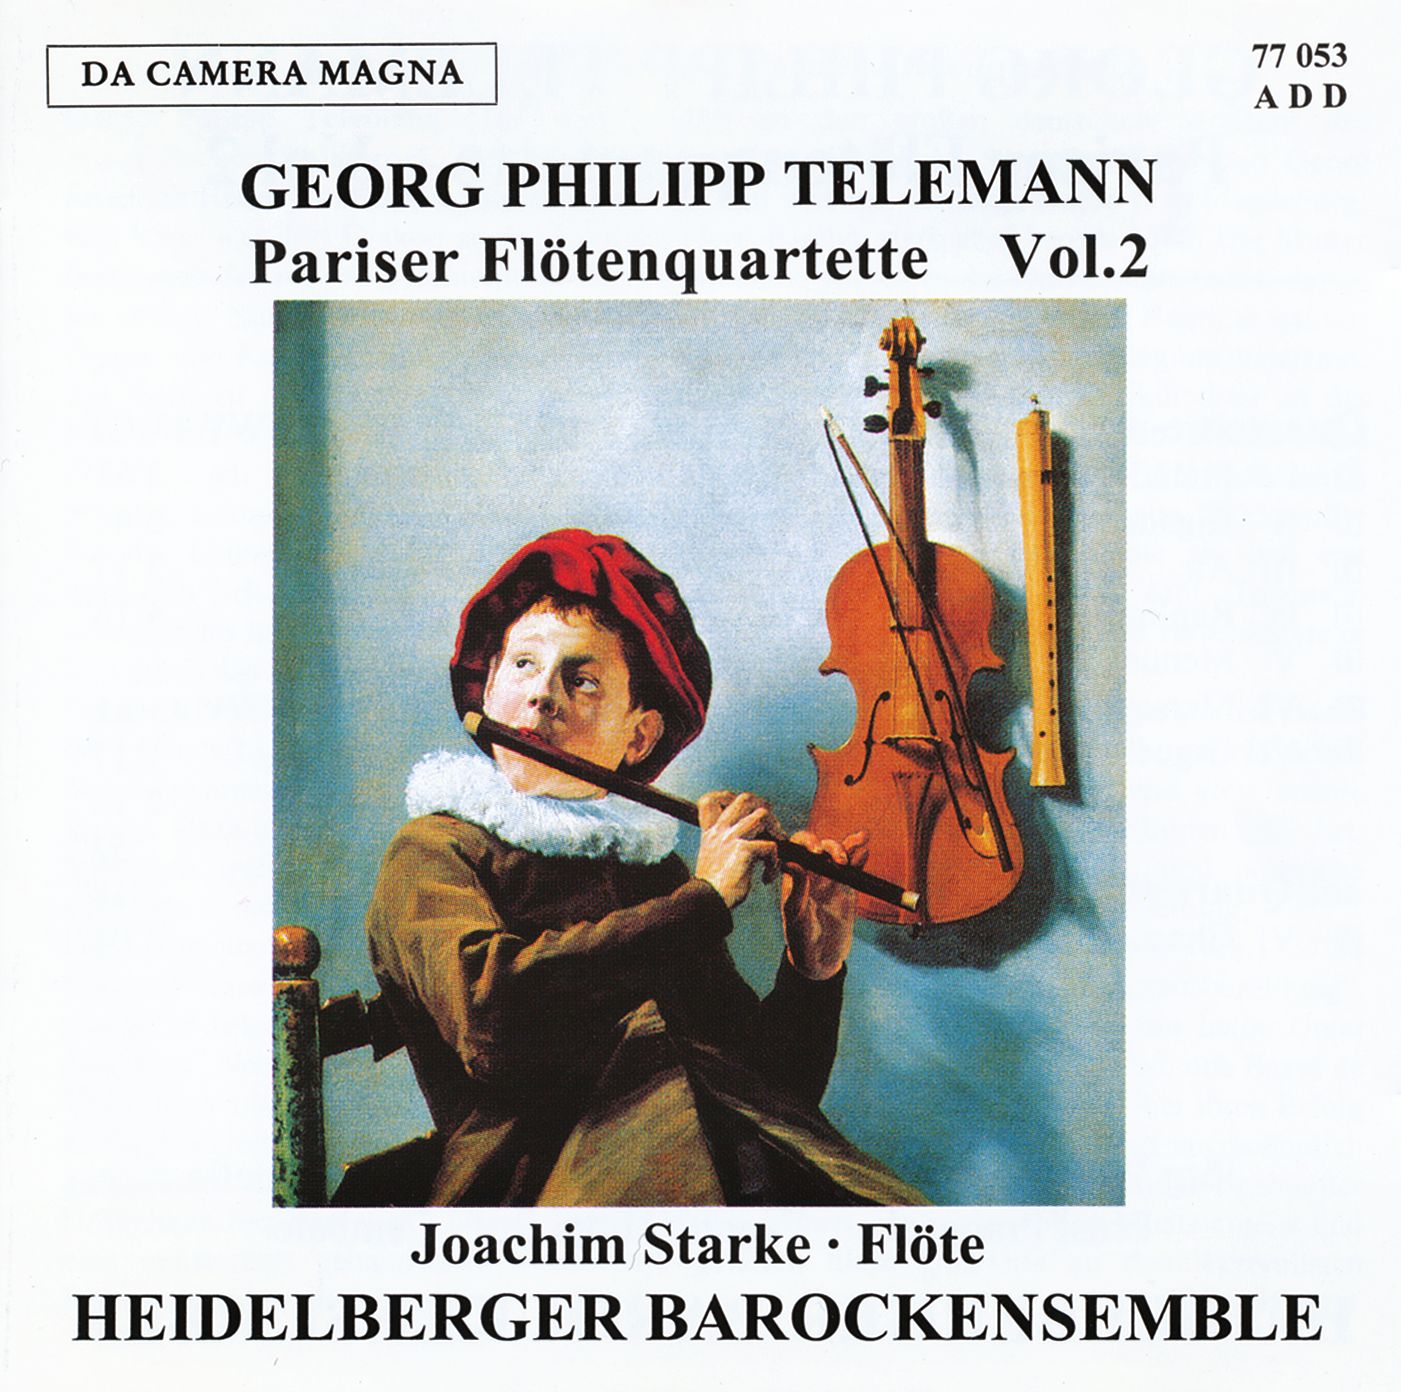 Georg Philipp Telemann - Pariser Flötenquartette Vol. 2